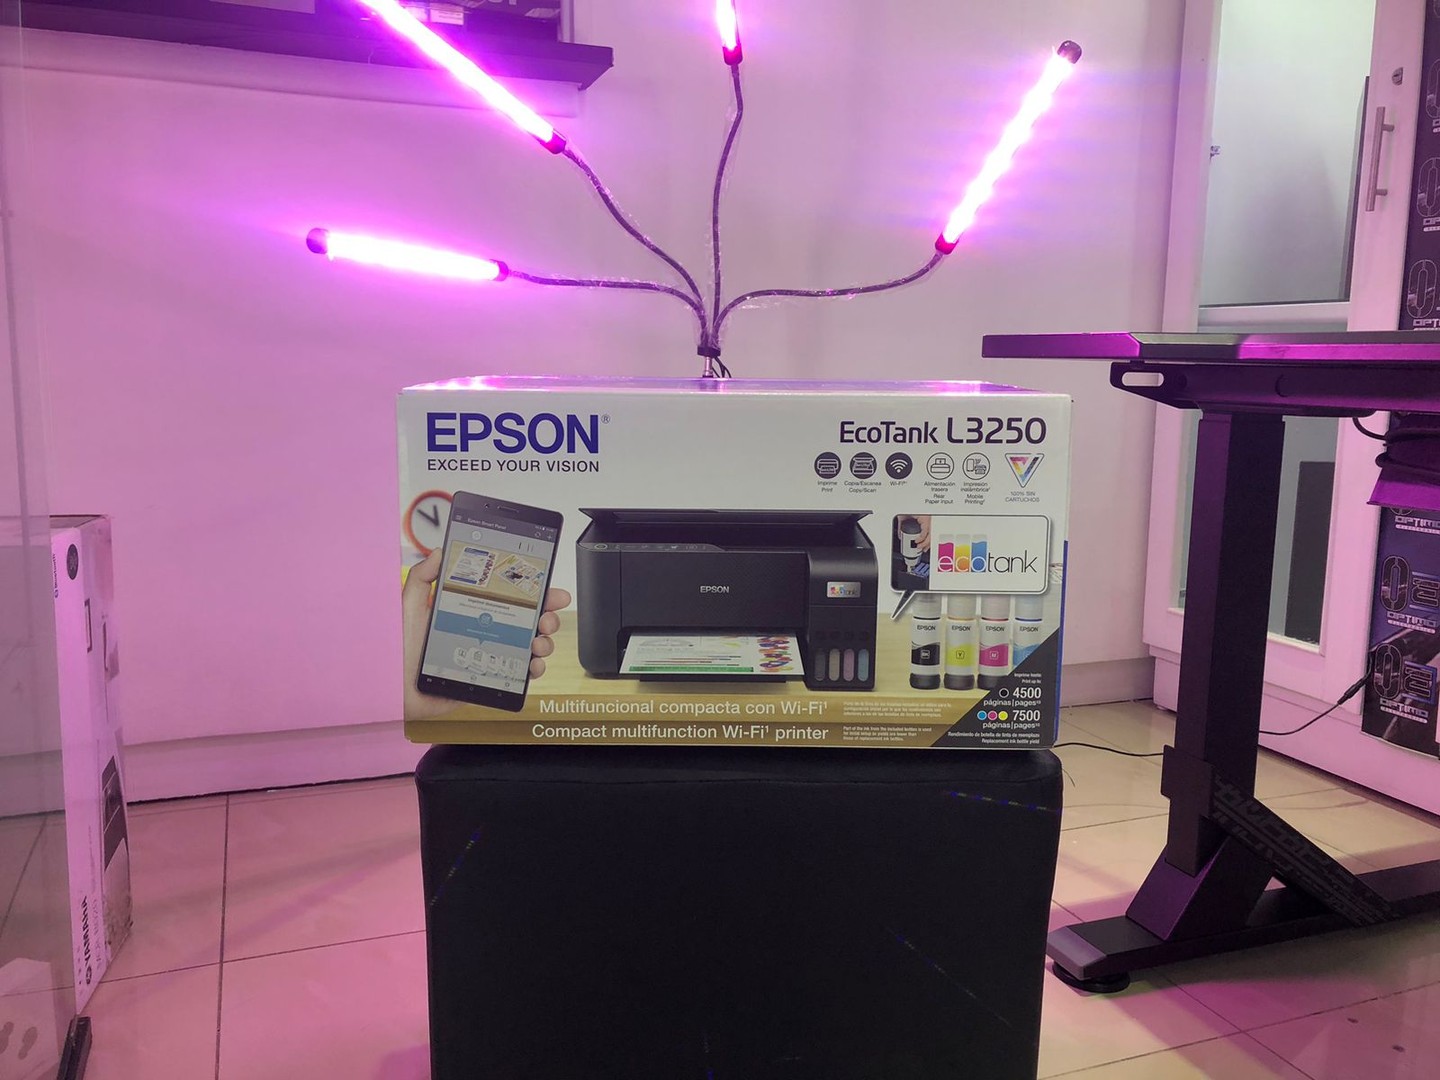 impresoras y scanners - Impresora Inalambrica y desde el celular Multifuncion Epson L3250 mas garantia 7